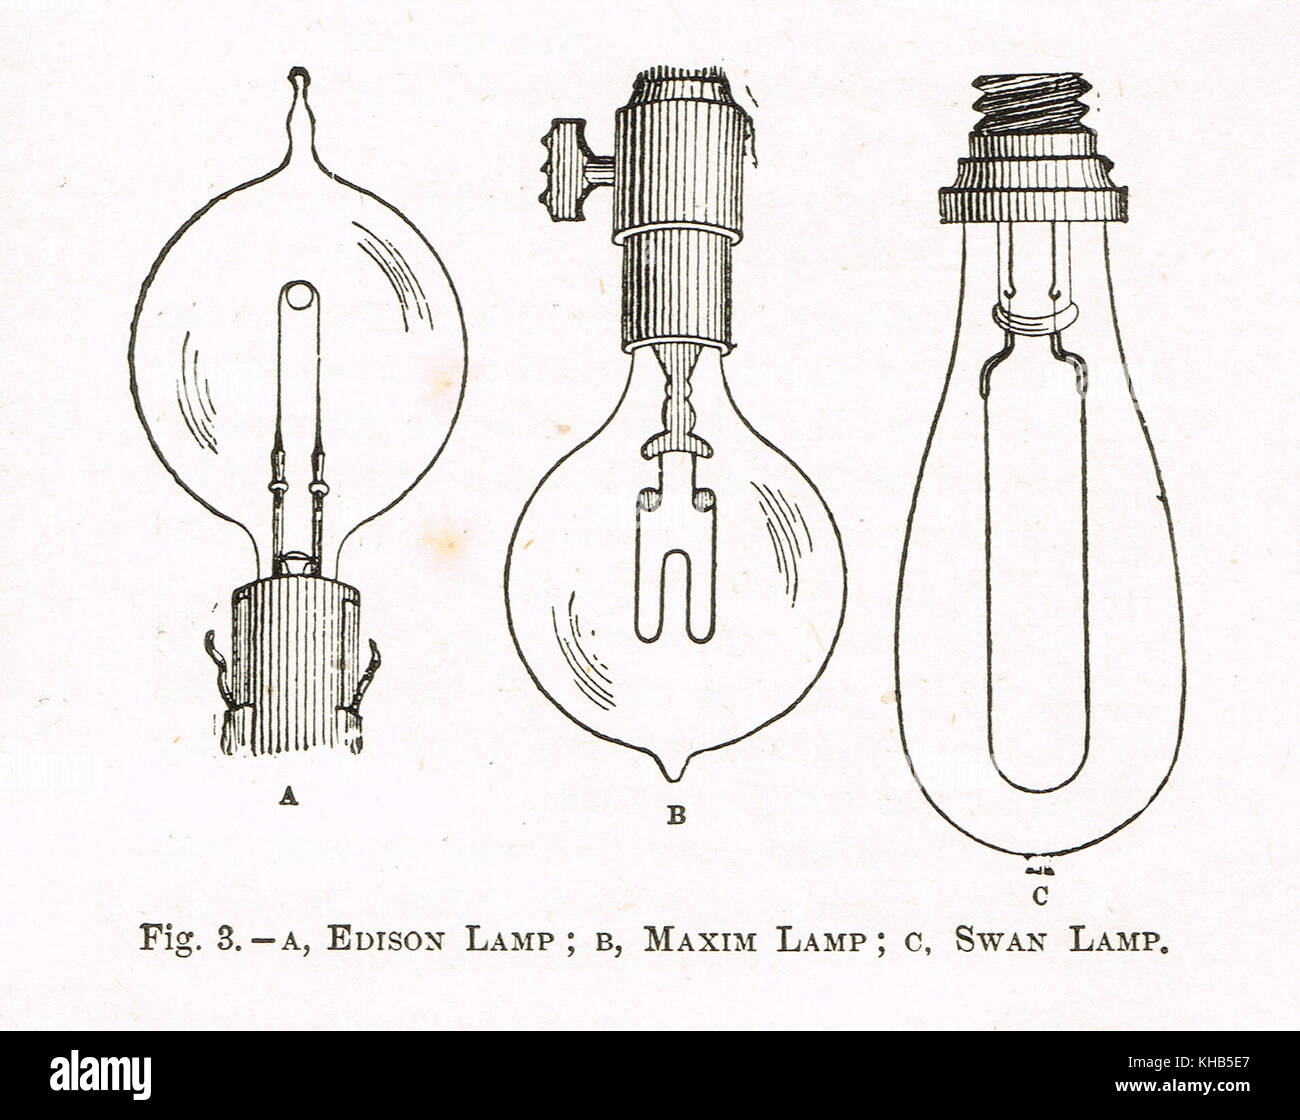 Les lampes à incandescence, 19e siècle Illustration d'Edison lamp, lampe  lampe Swan & Maxim. Les ampoules des 3 prétendants au titre d'inventeur de  la première ampoule électrique, Thomas Edison, Hiram Maxim, &